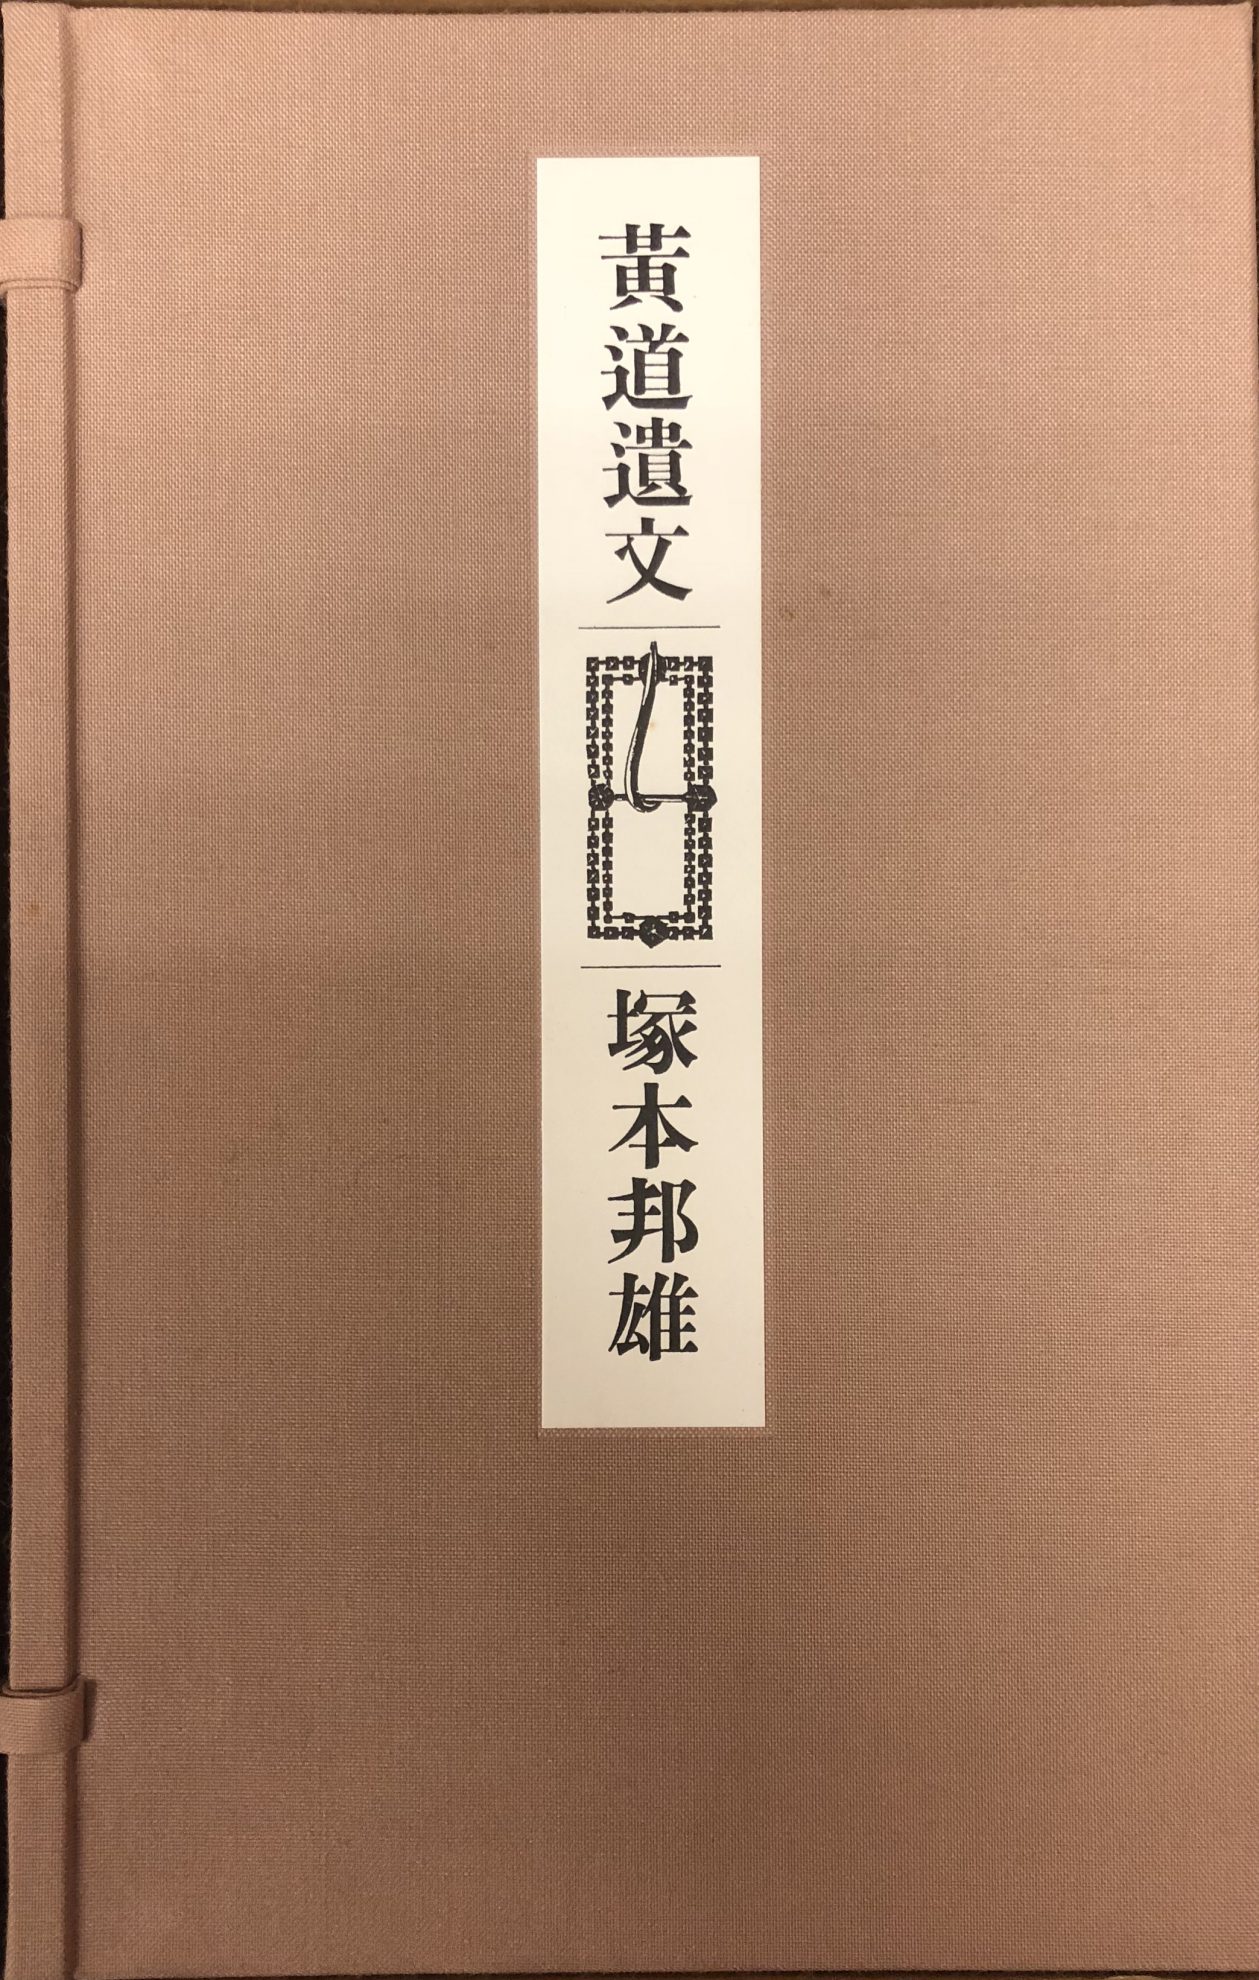 署名入限定版『黄道遺文』ほか塚本邦雄関係の古書を出張買取致しました 